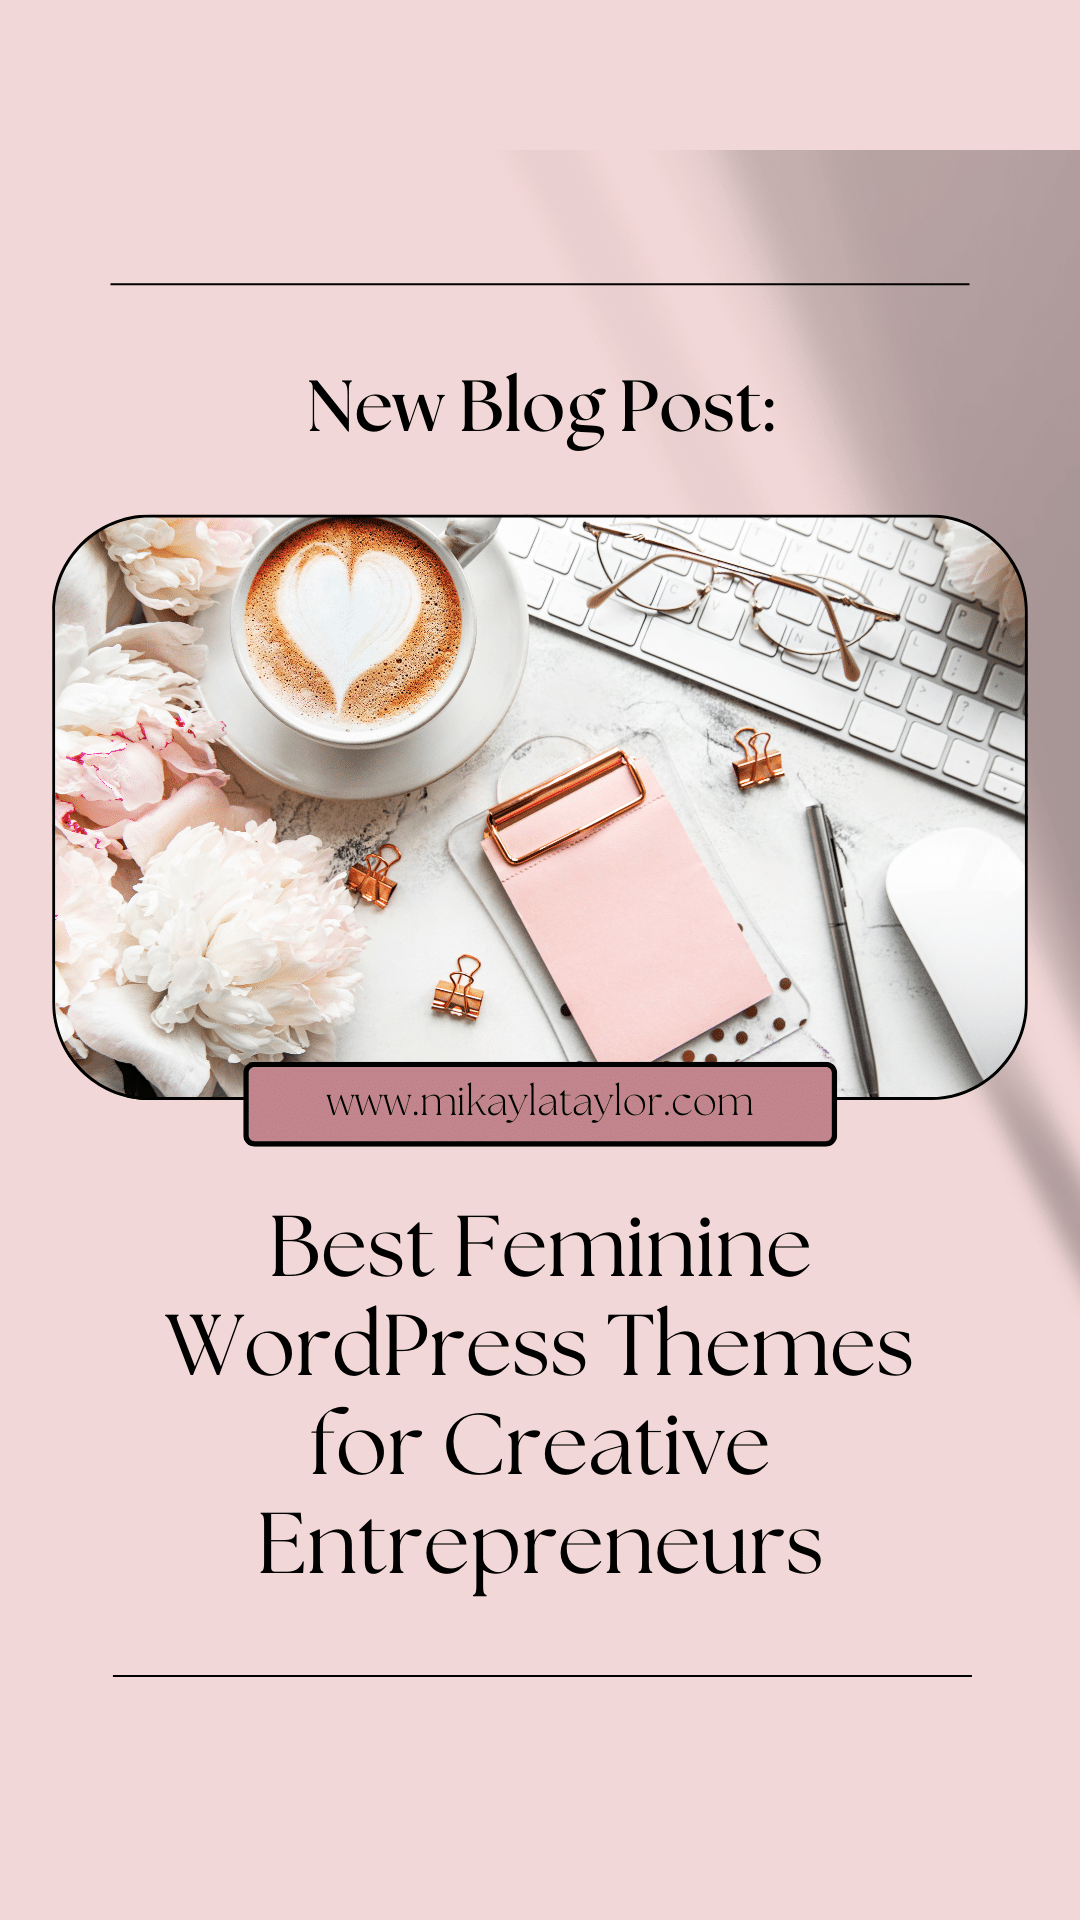 Best Feminine WordPress Themes for Creative Entrepreneurs Pinterest2